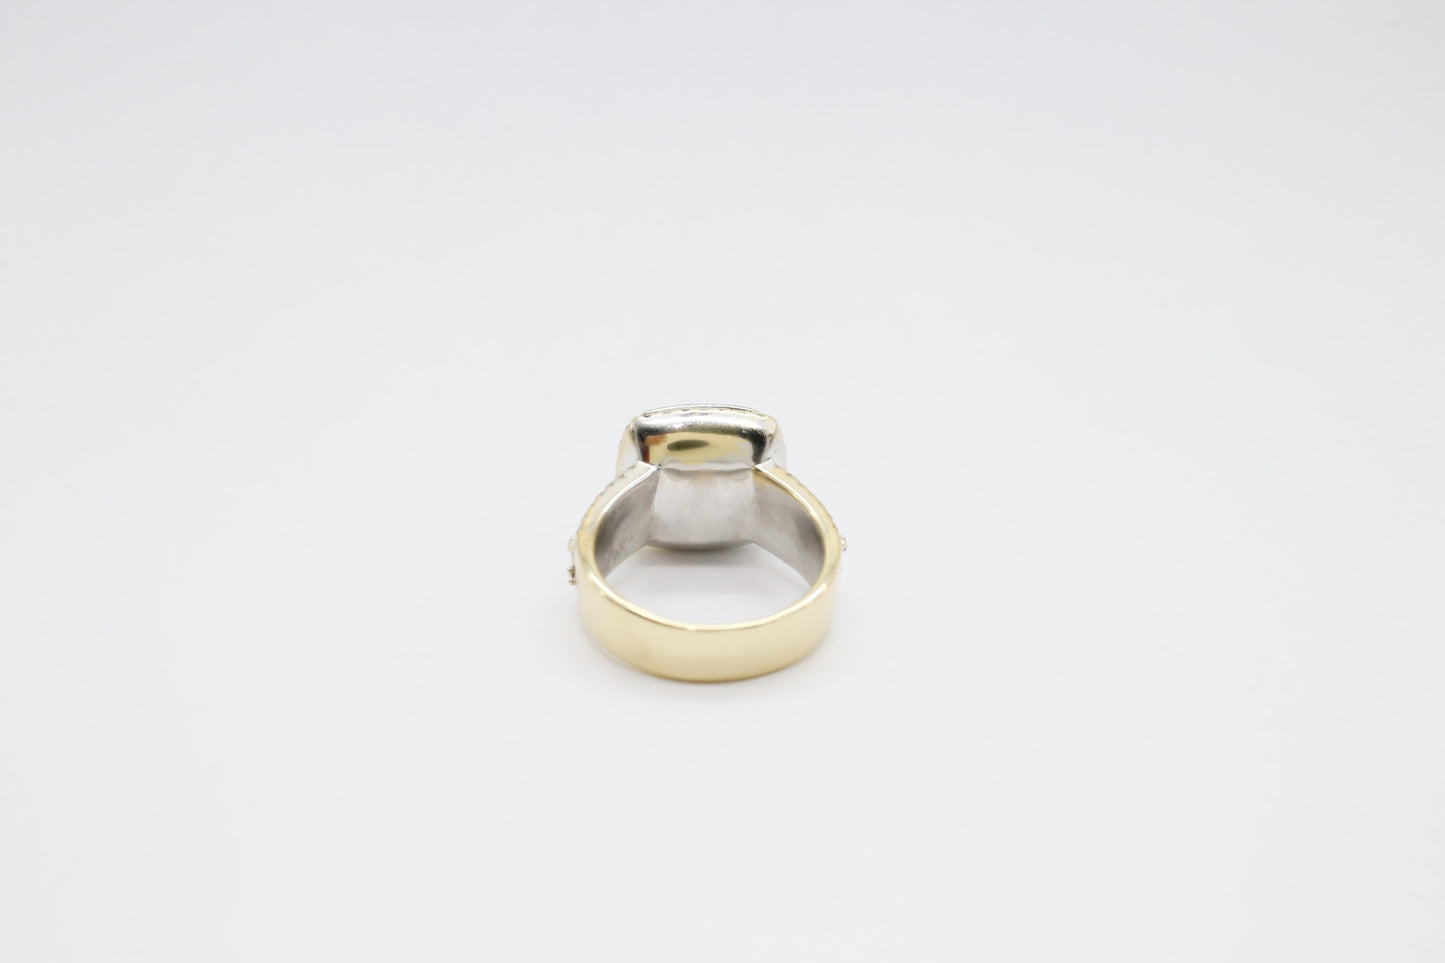 14k Gold Men's Diamond Ring, Size 11.5 - 13.3g